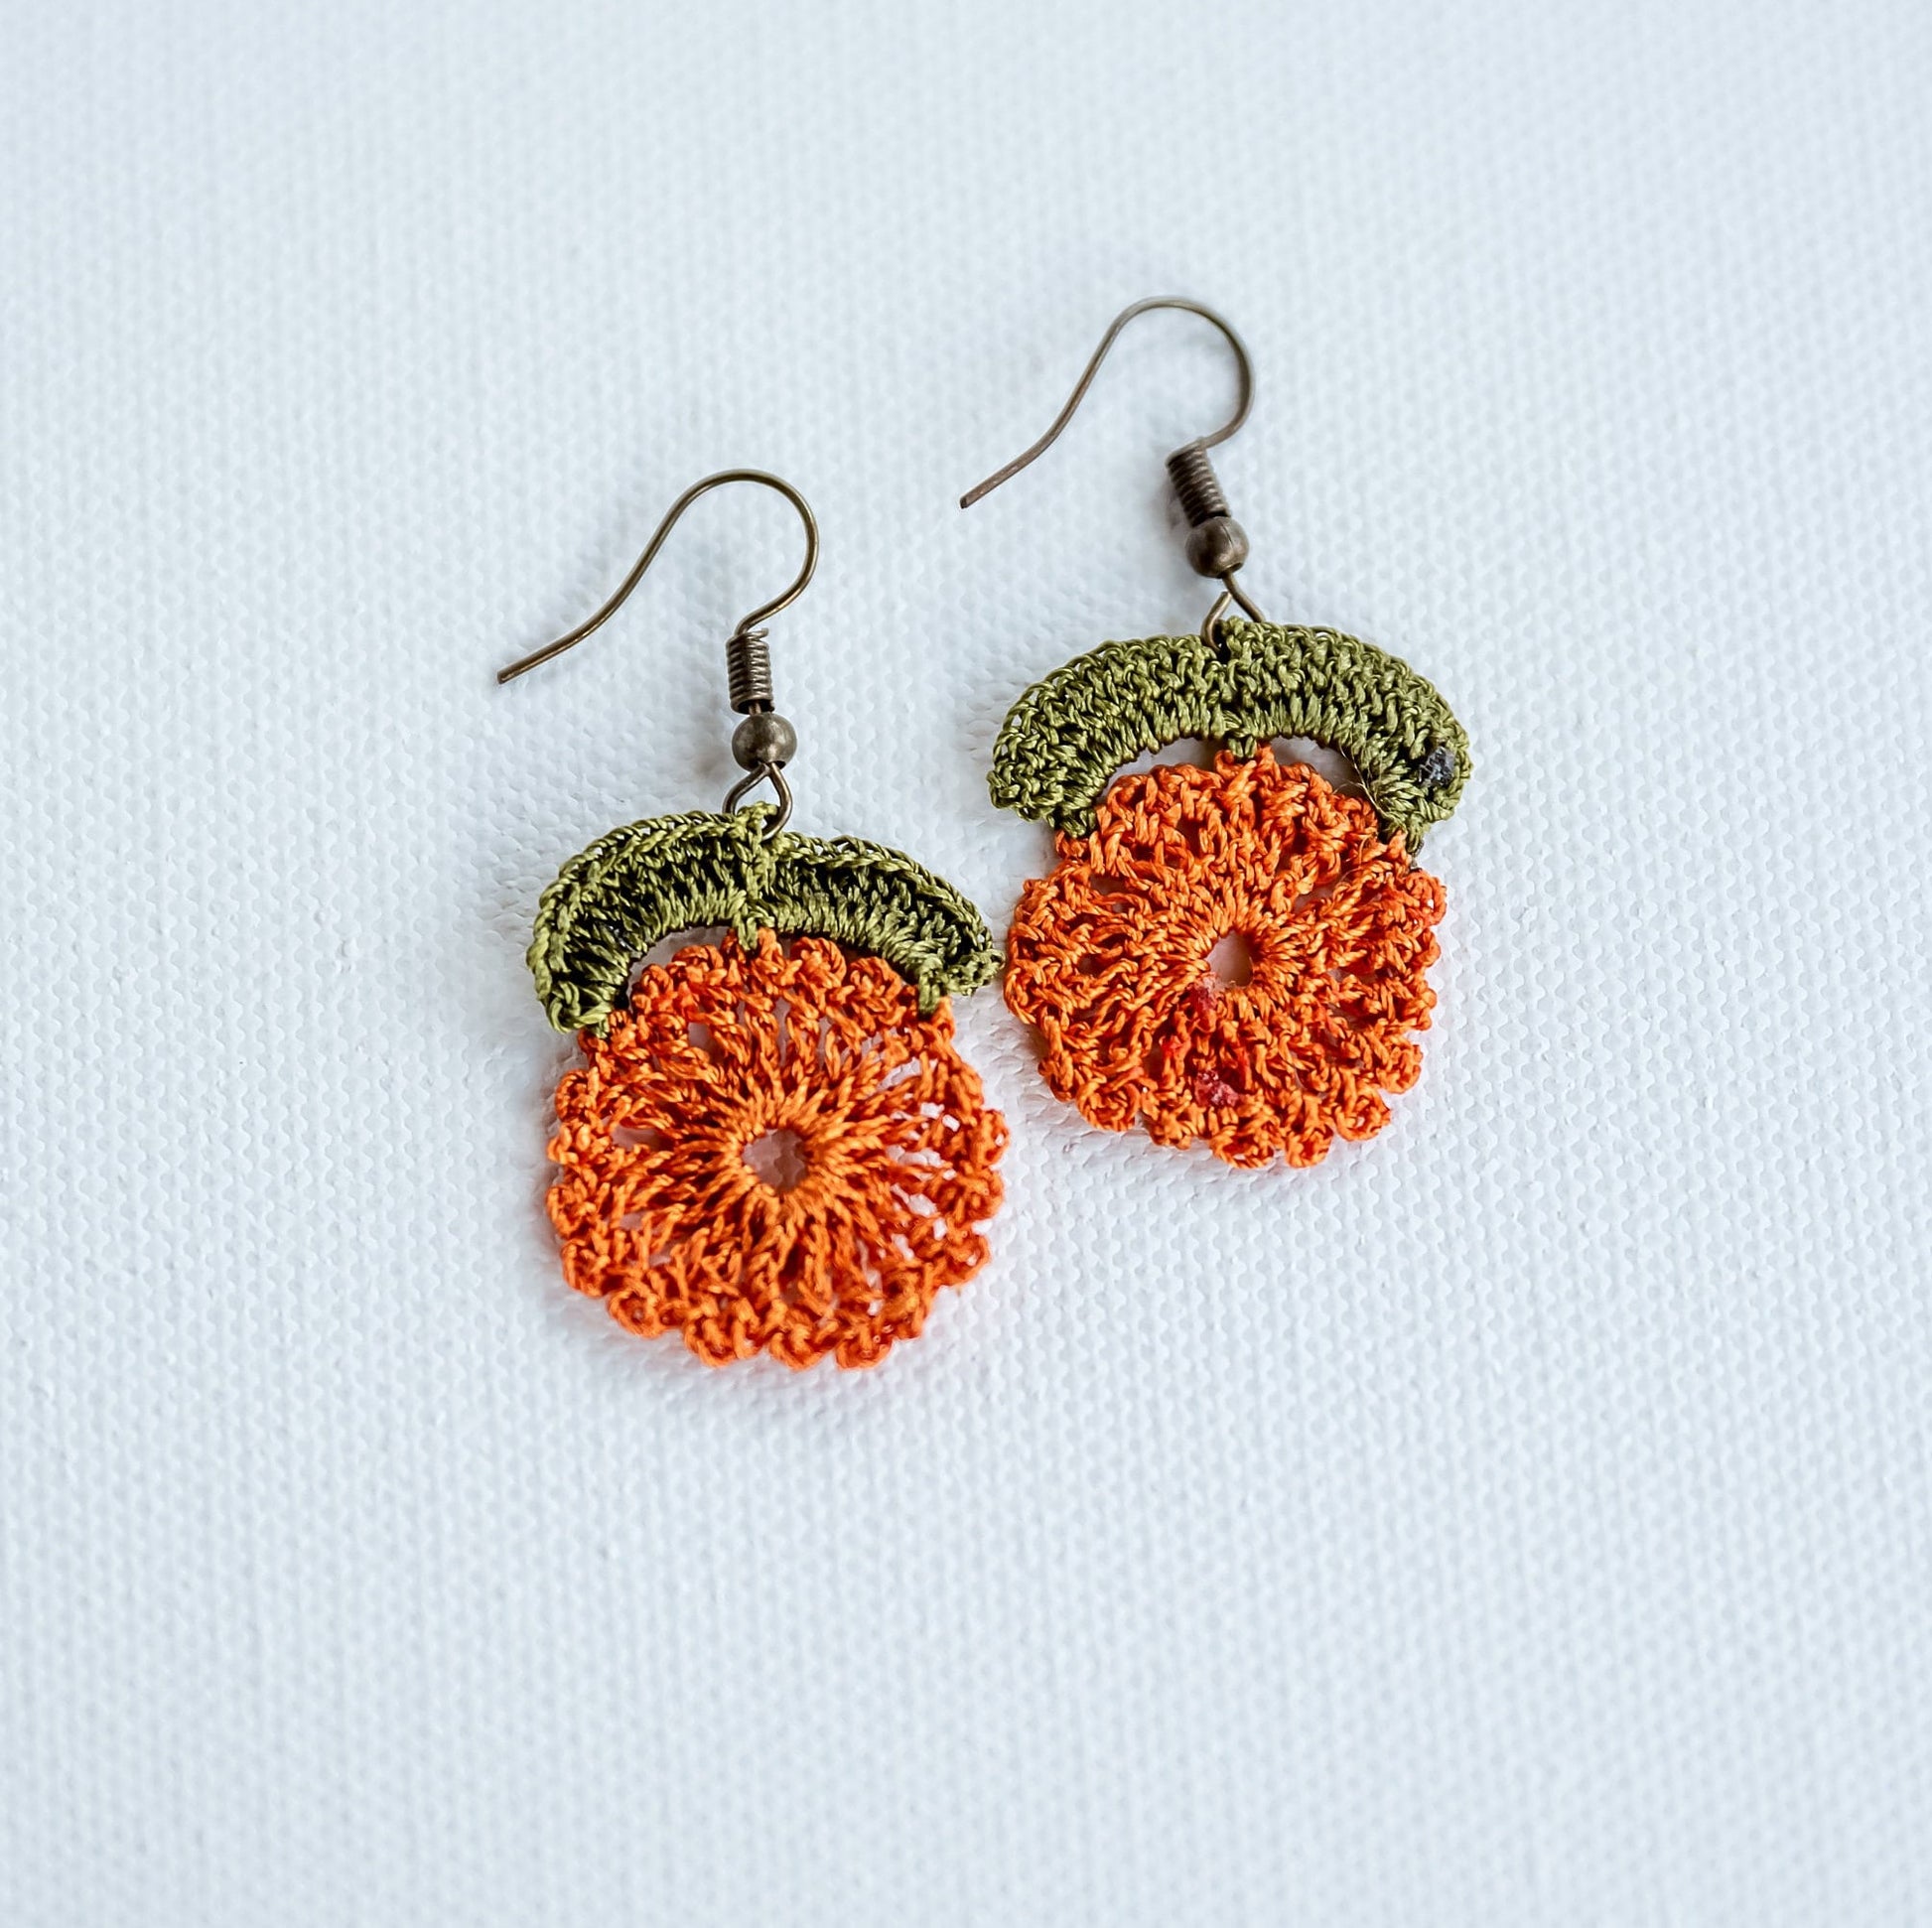 Floral Earrings Crochet Earrings Floral Crochet Earrings Boho Earrings Handmade Floral Earrings Lightweight Floral Jewelry Wedding Earrings